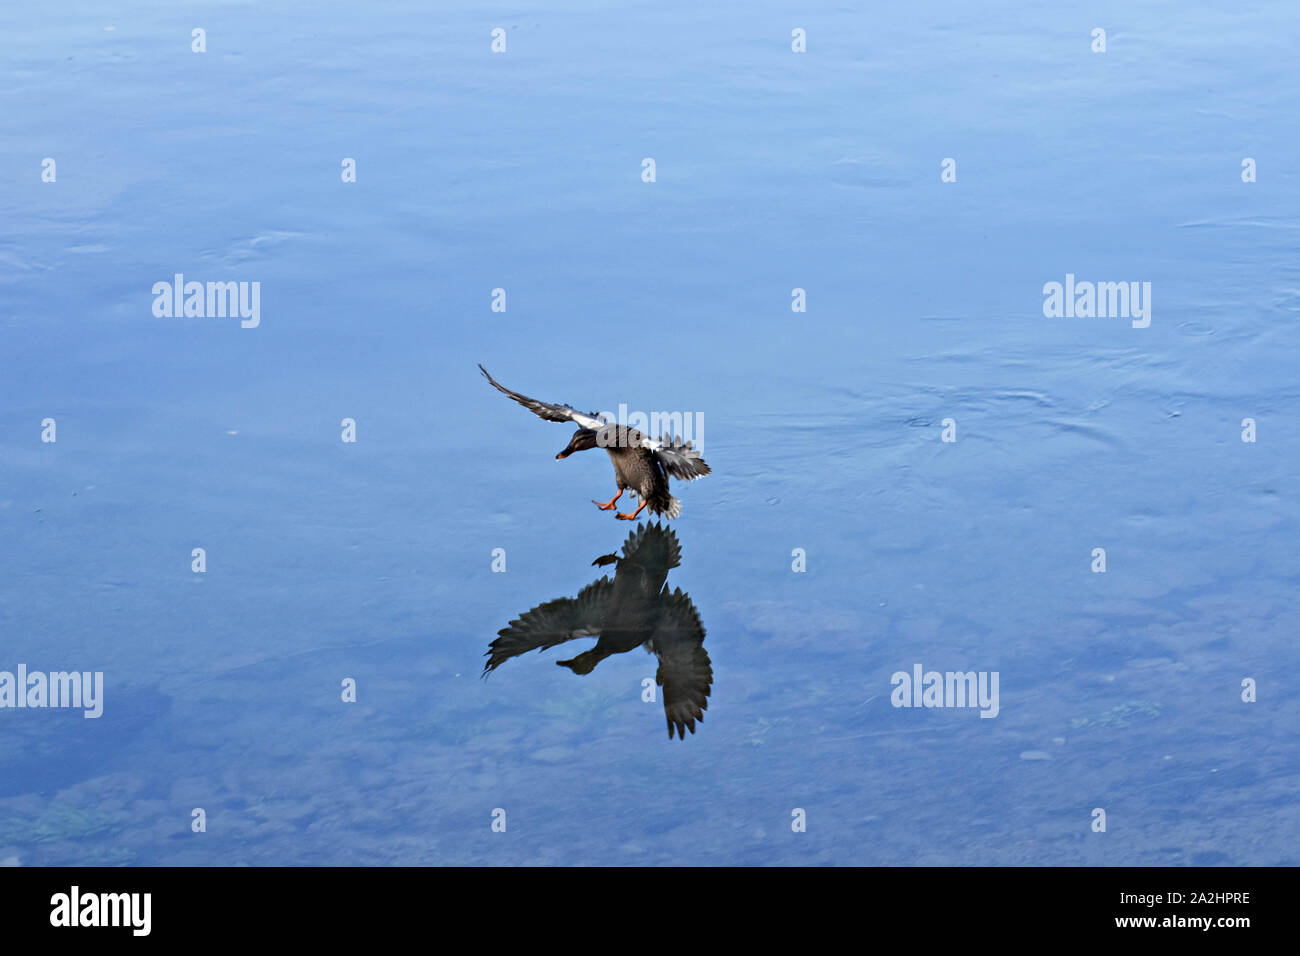 Hermoso pato silvestre aterrizar en un lago de agua clara/ Fauna fotografía de naturaleza Foto de stock